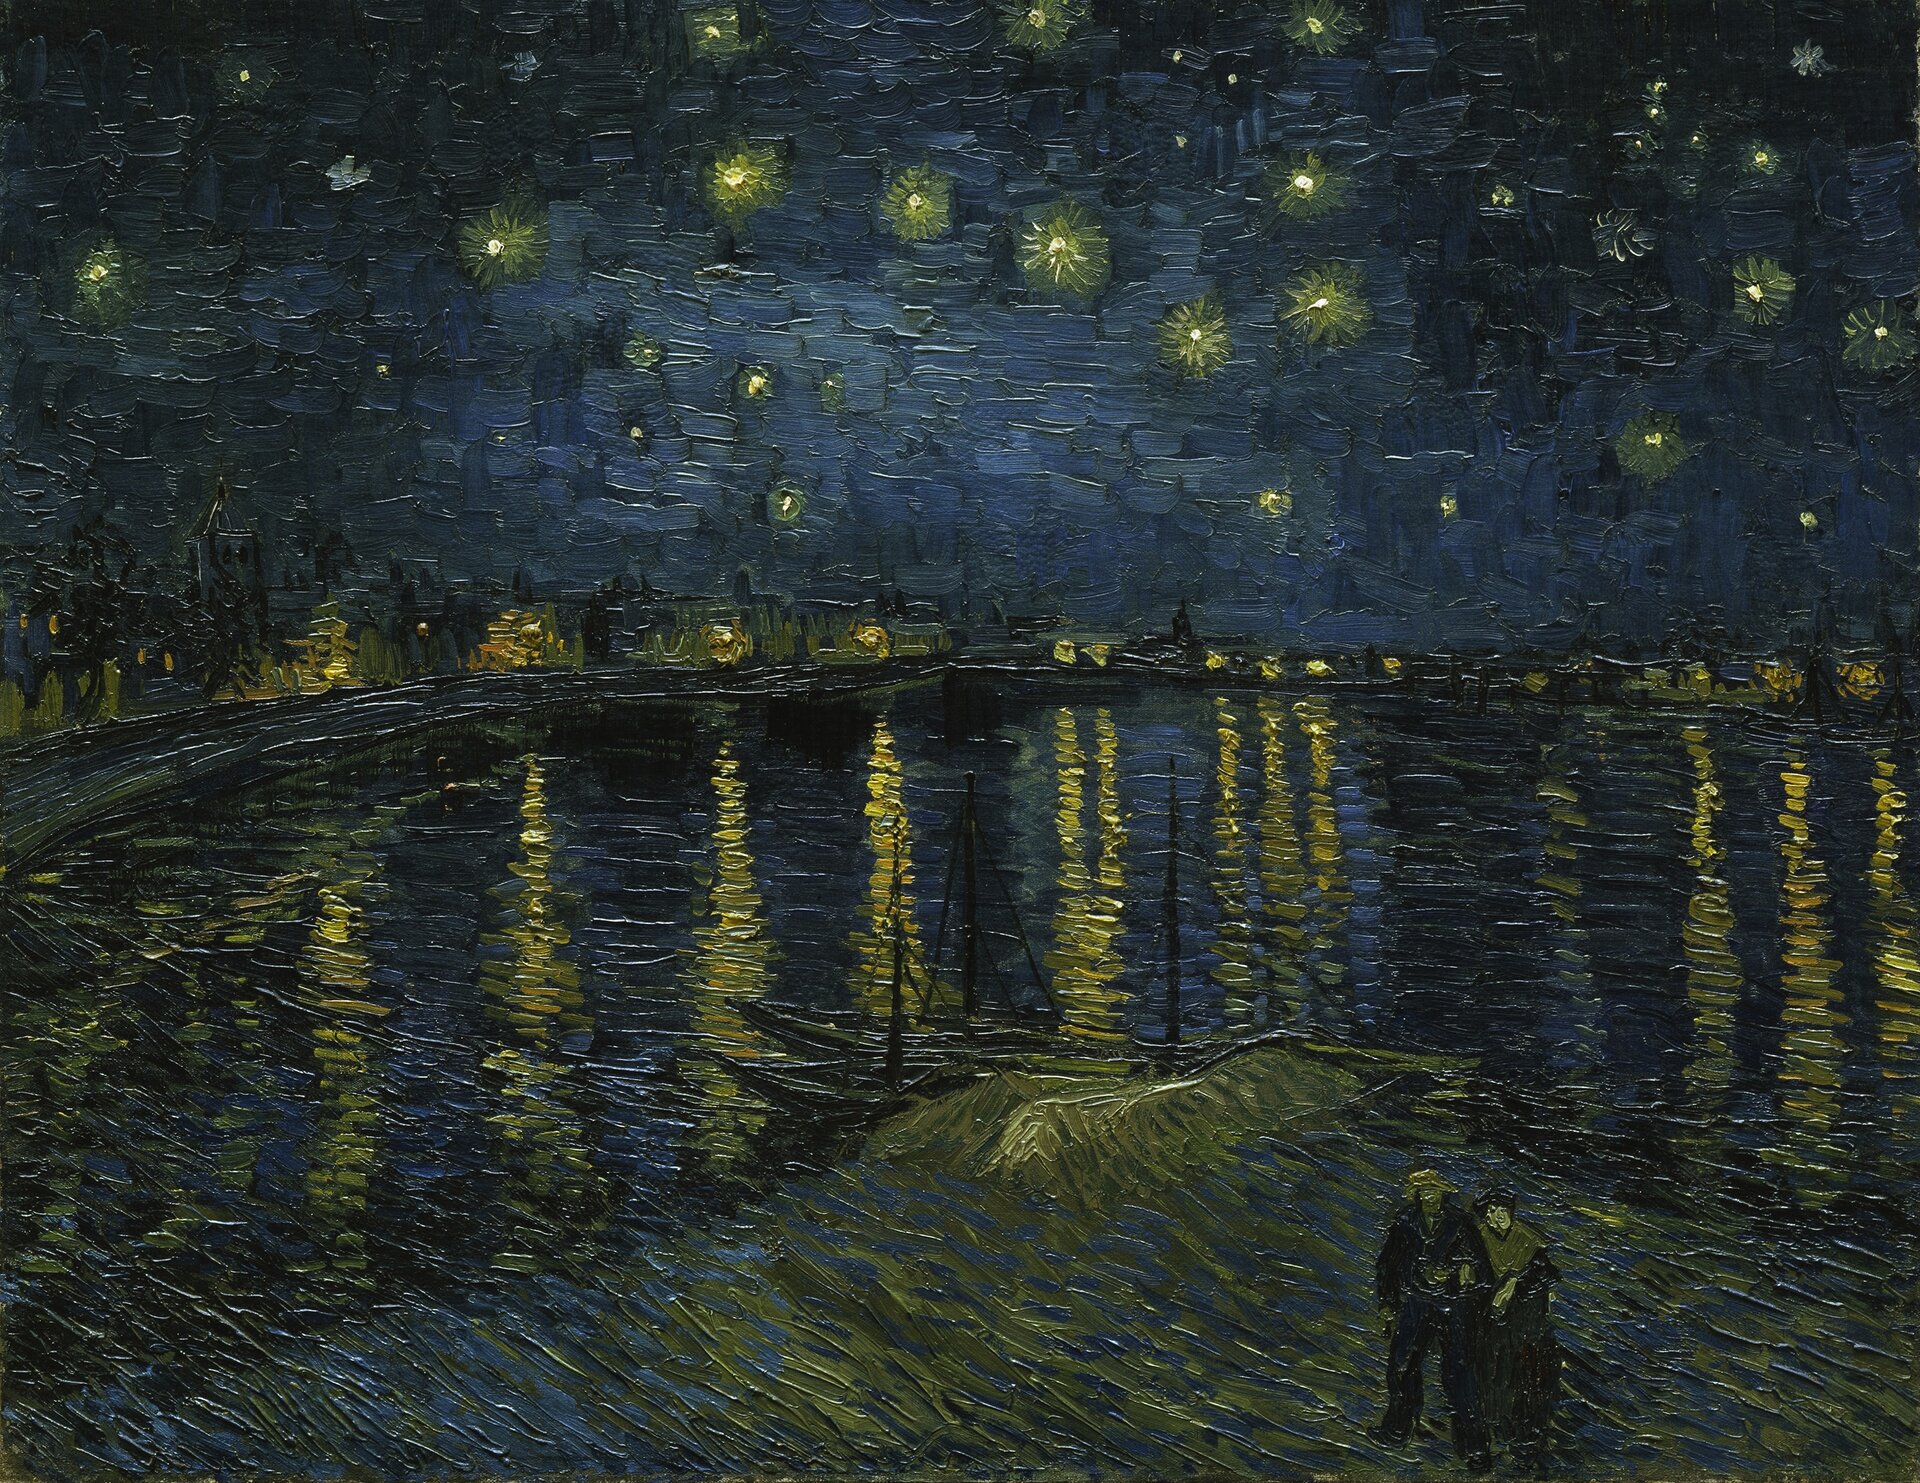 Gwiaździsta noc nad Rodanem Źródło: Vincent van Gogh, Gwiaździsta noc nad Rodanem , 1888, obraz olejny, domena publiczna.